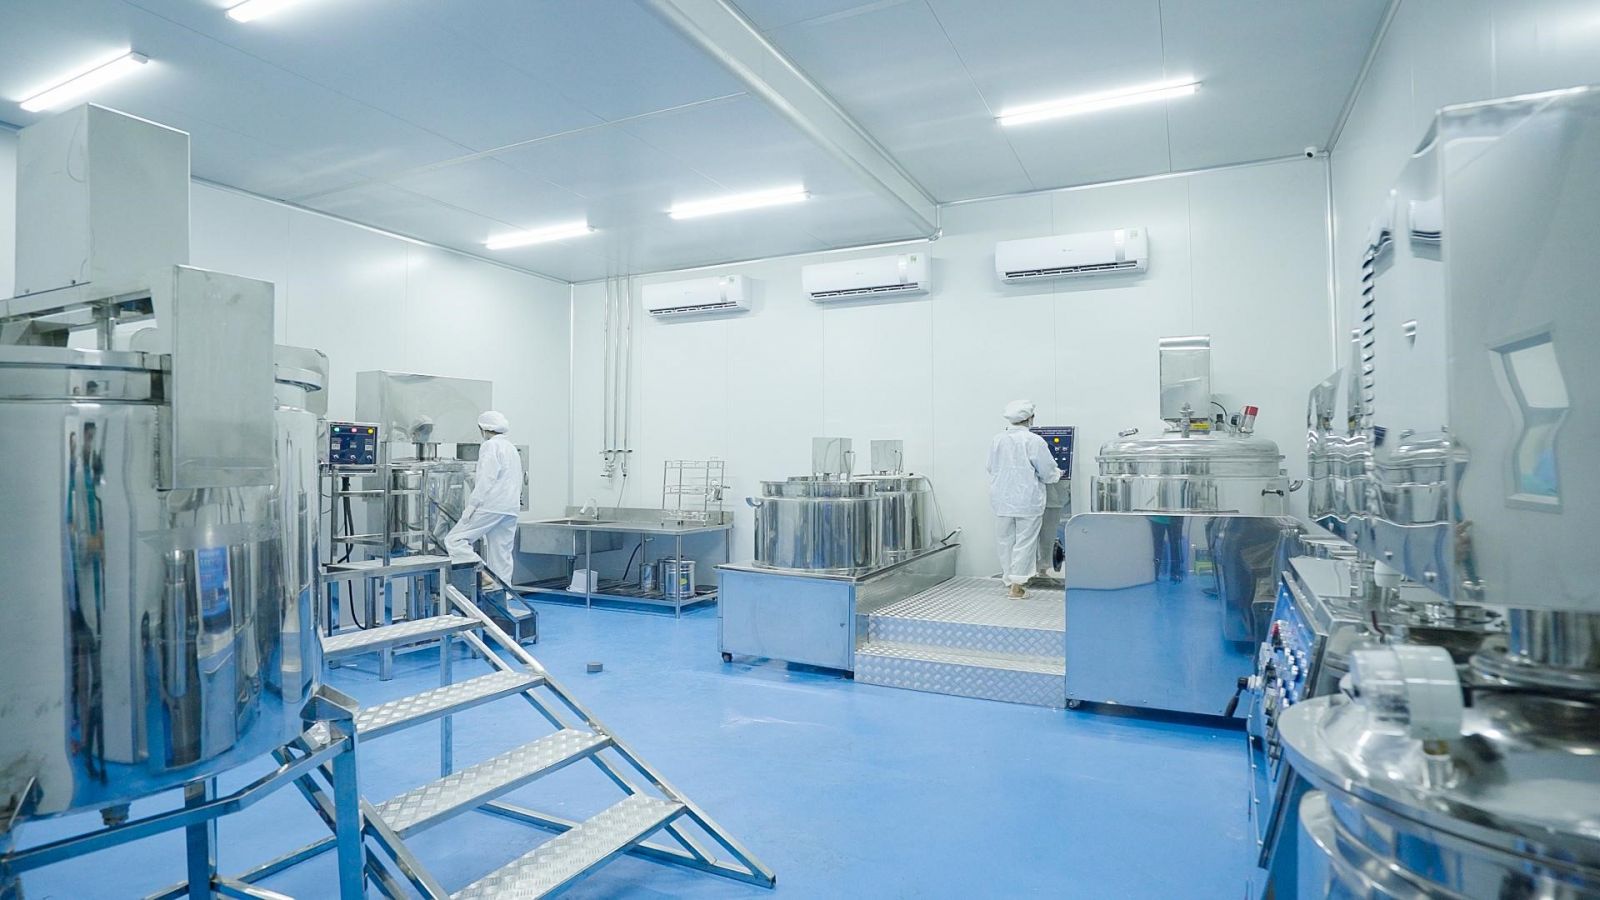 Nhà máy sản xuất mỹ phẩm được đầu tư trang thiết bị hiện đại, dựa theo tiêu chuẩn nhà máy sản xuất mỹ phẩm ASEAN